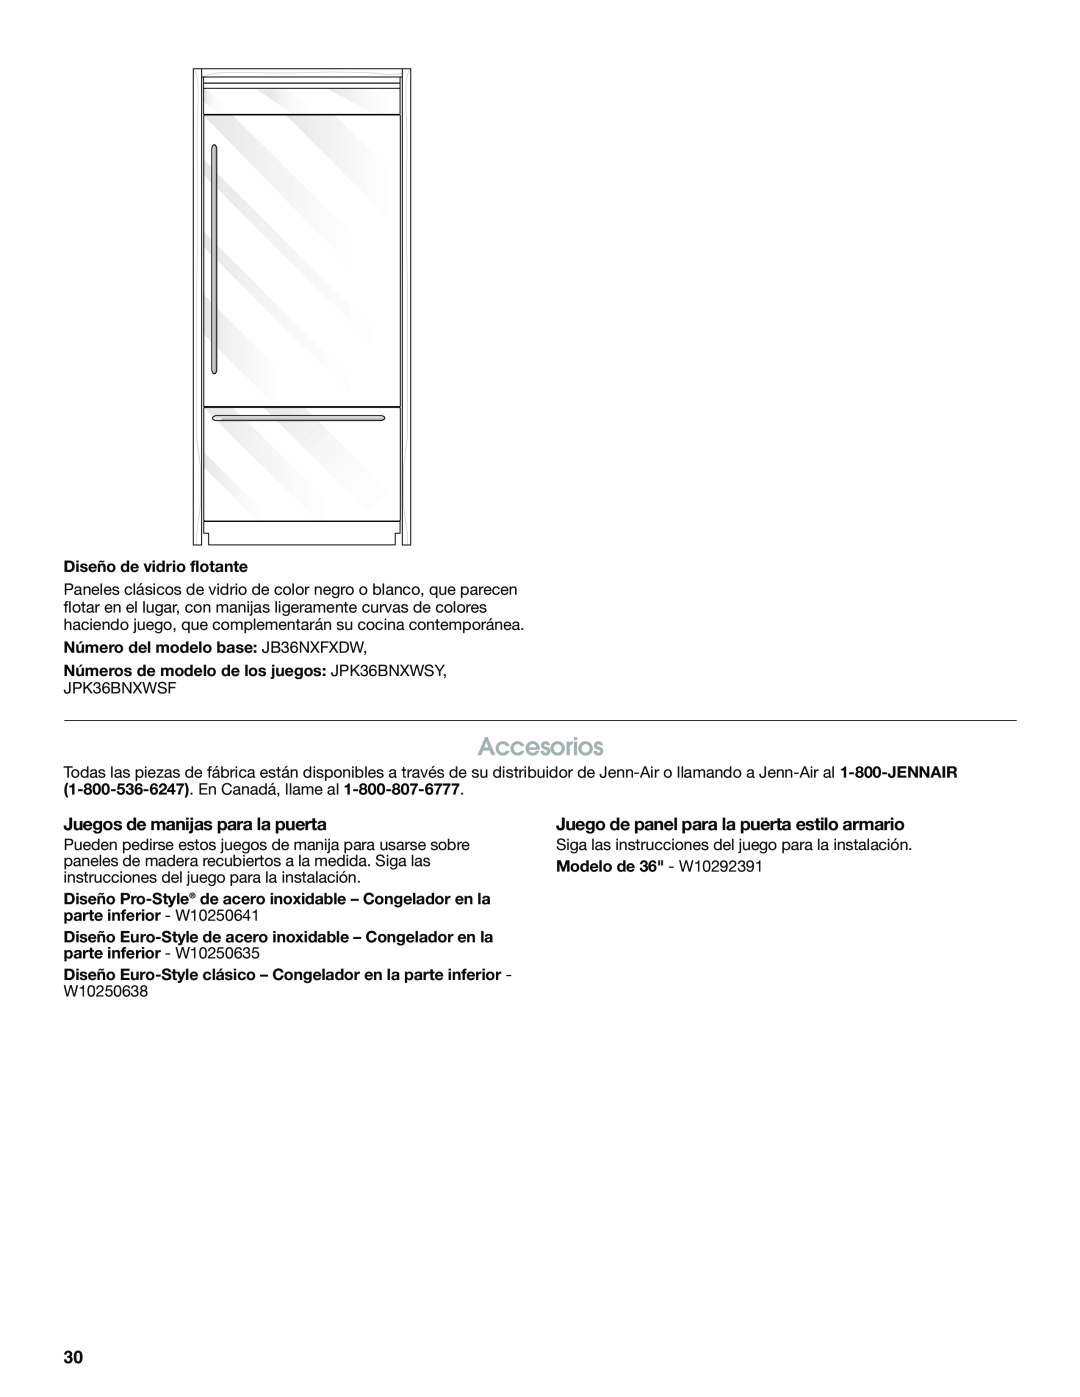 Jenn-Air W10379137A manual Accesorios, Juegos de manijas para la puerta, Juego de panel para la puerta estilo armario 